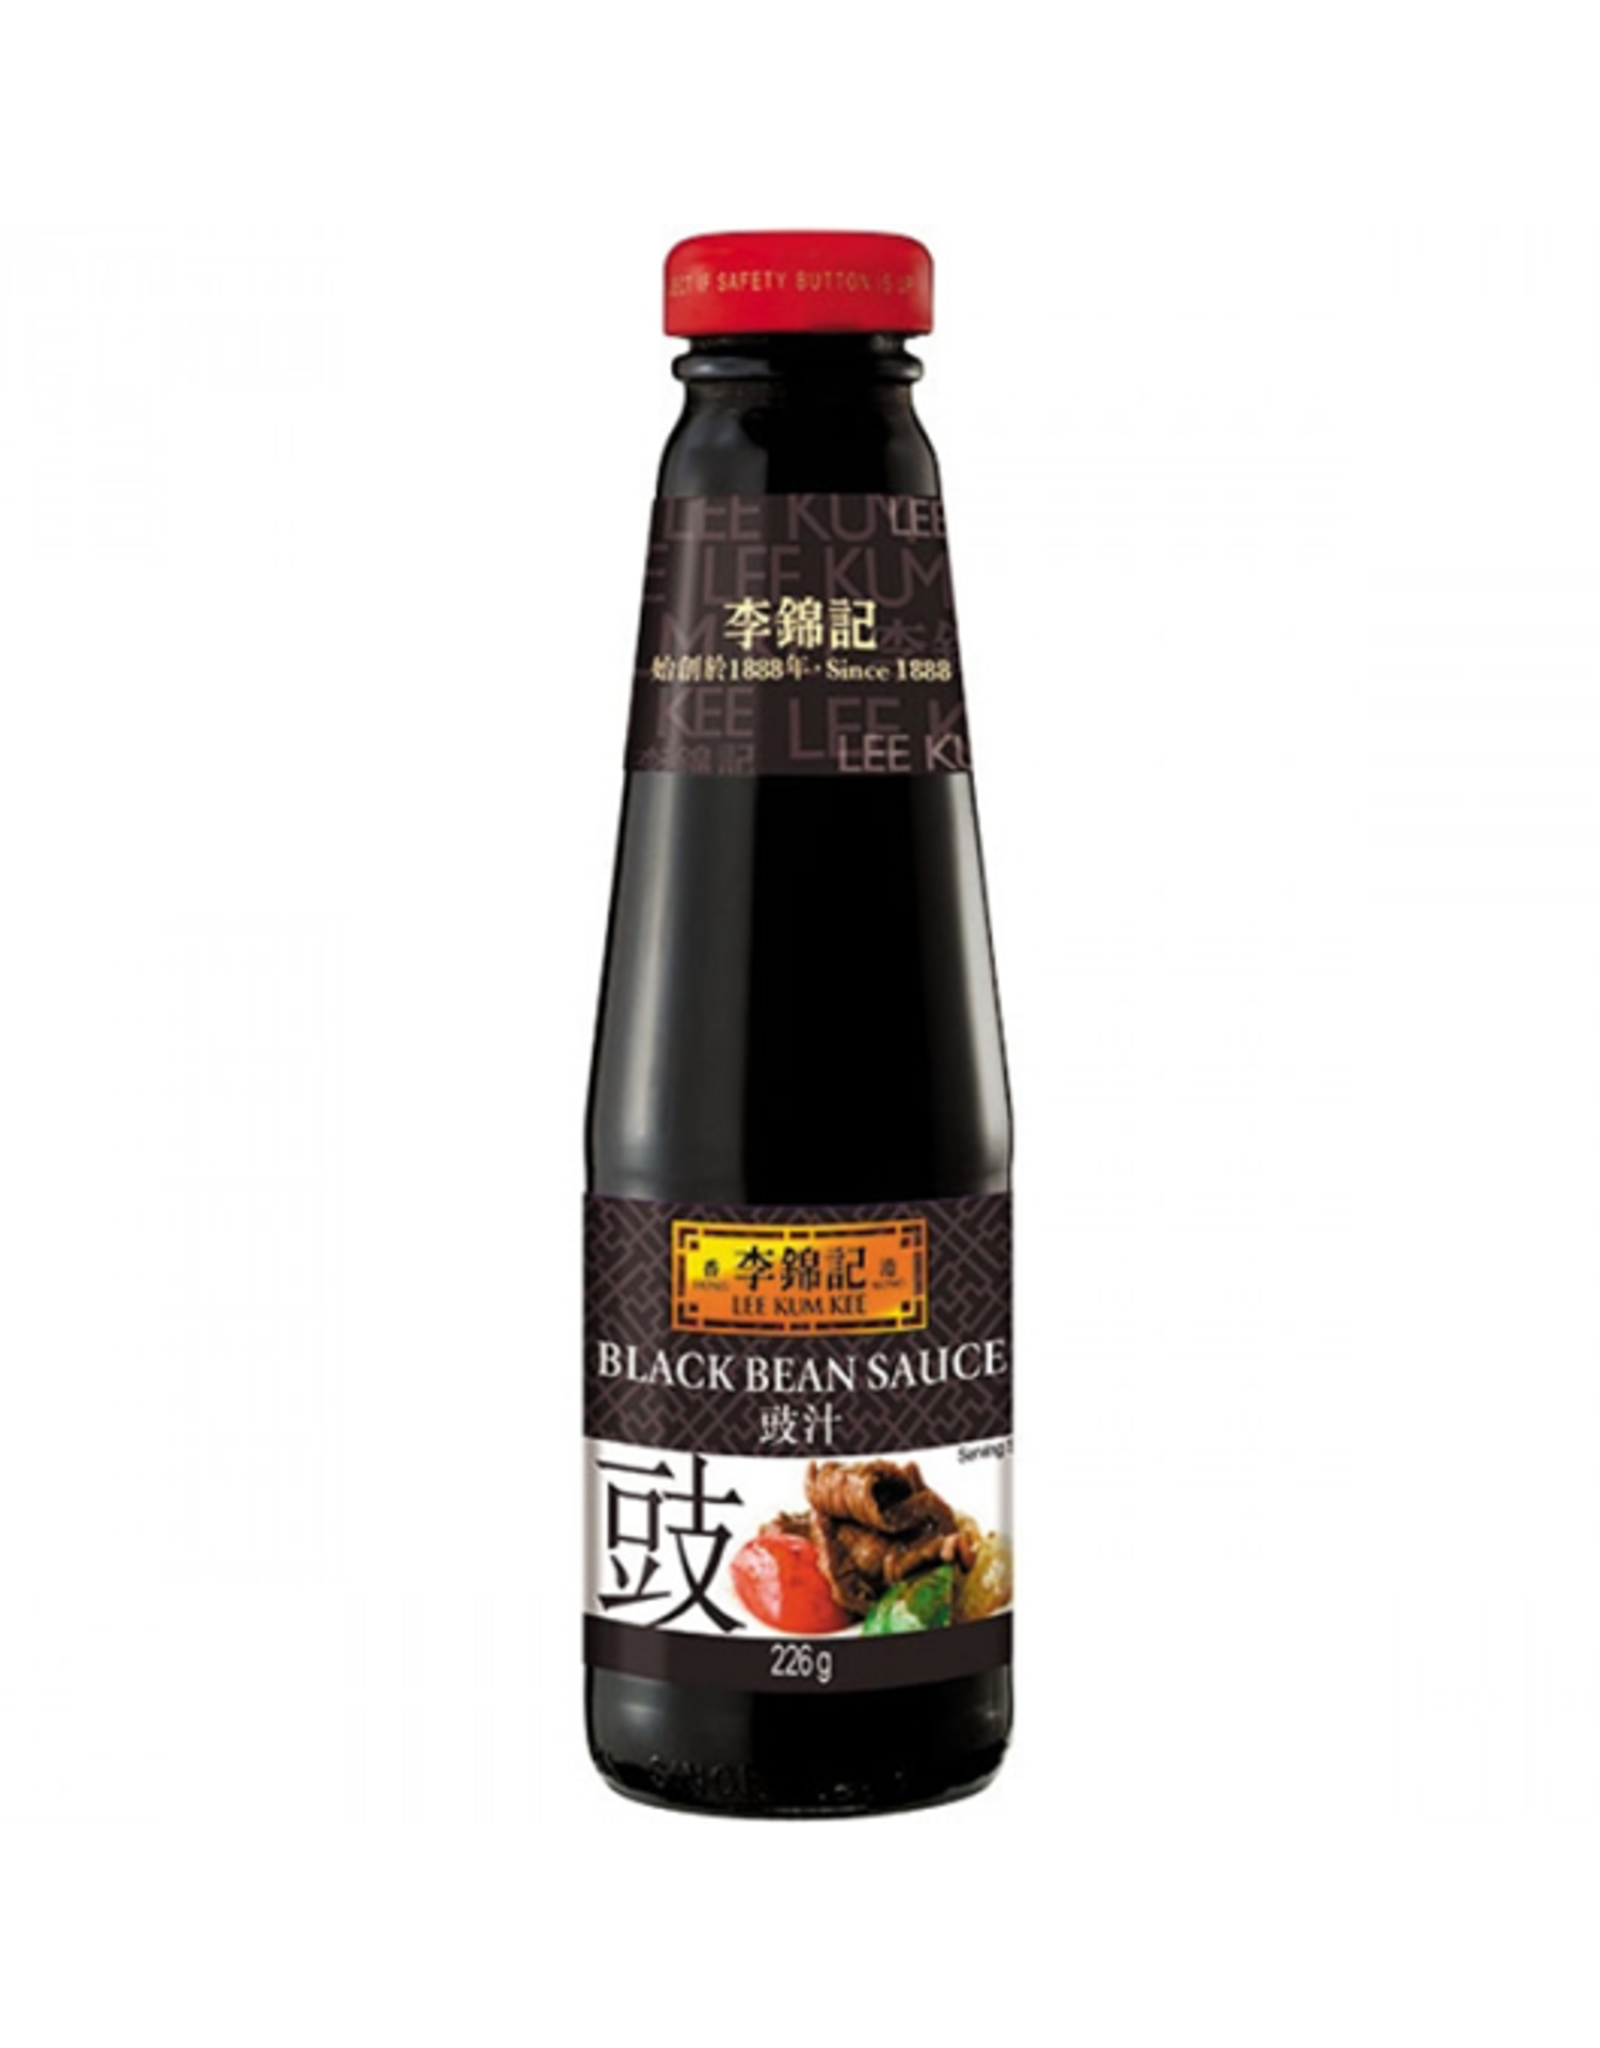 Lee Kum Kee Black Bean sauce